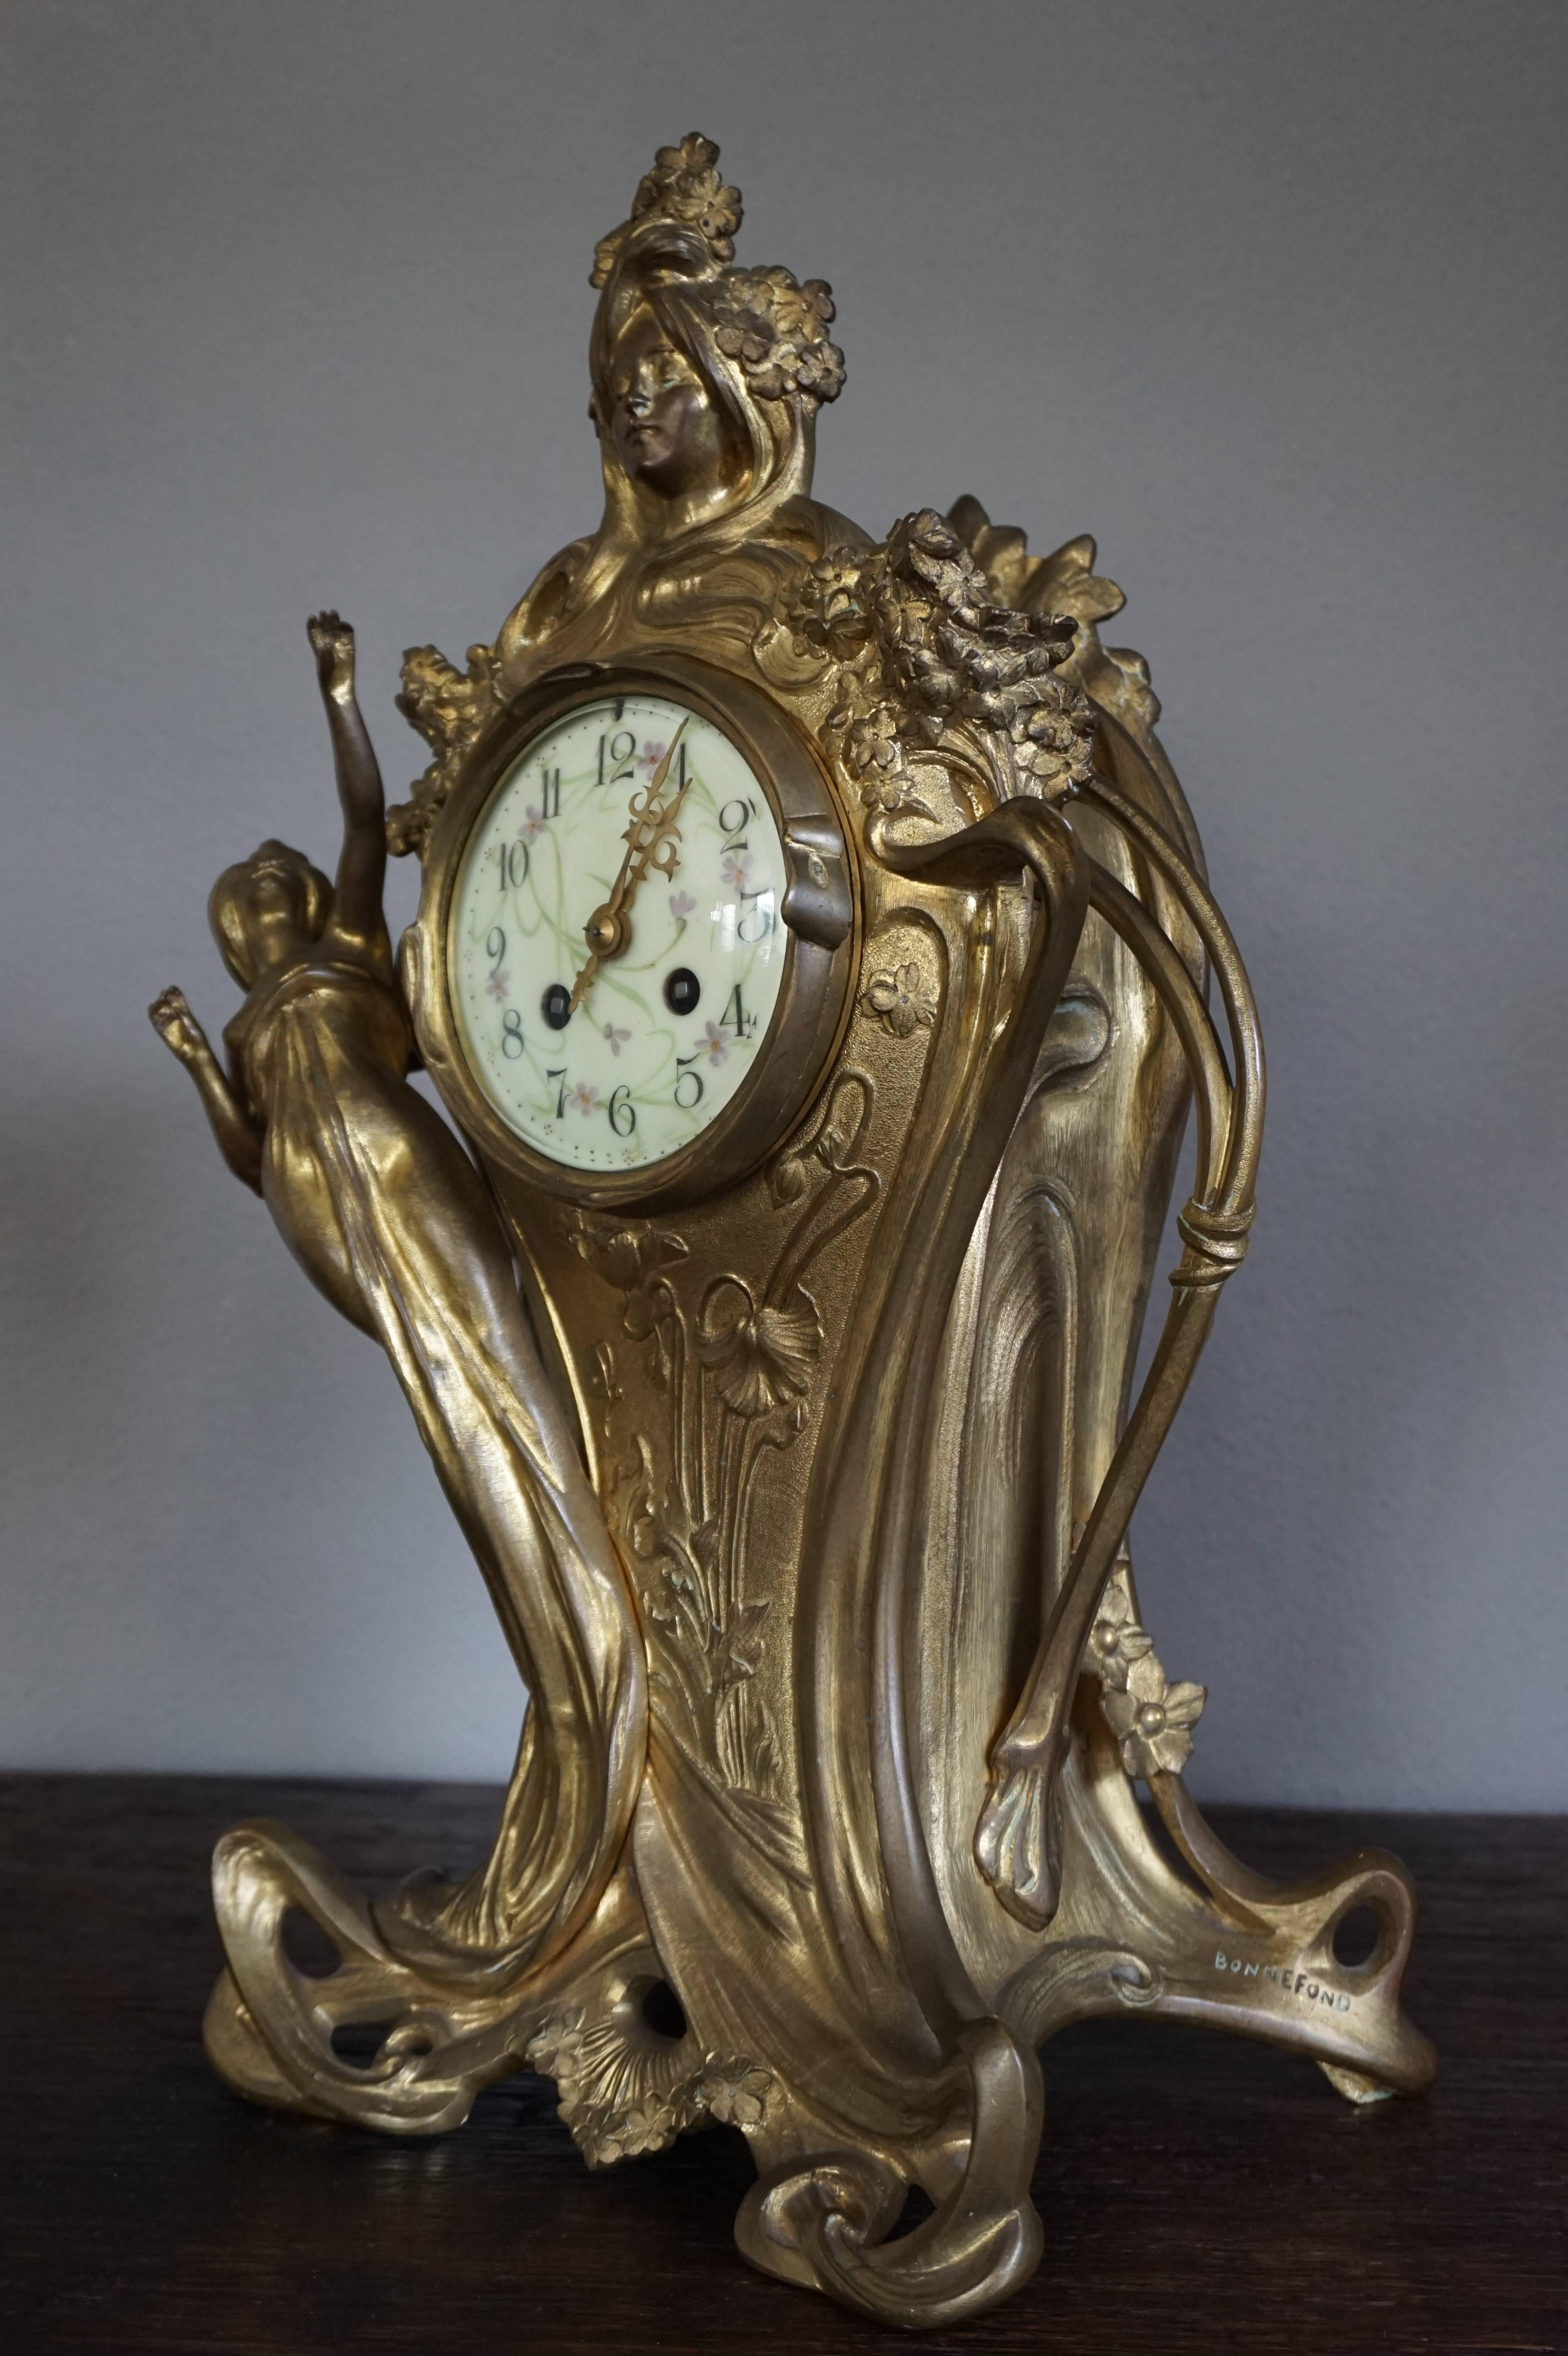 Grande et impressionnante, garniture d'horloge signée Bonnefond avec des sculptures de dame en bronze de haute qualité.

Cette garniture d'horloge Art nouveau est dans le merveilleux style de l'école de Nancy. La dame vibrante sur le côté gauche du